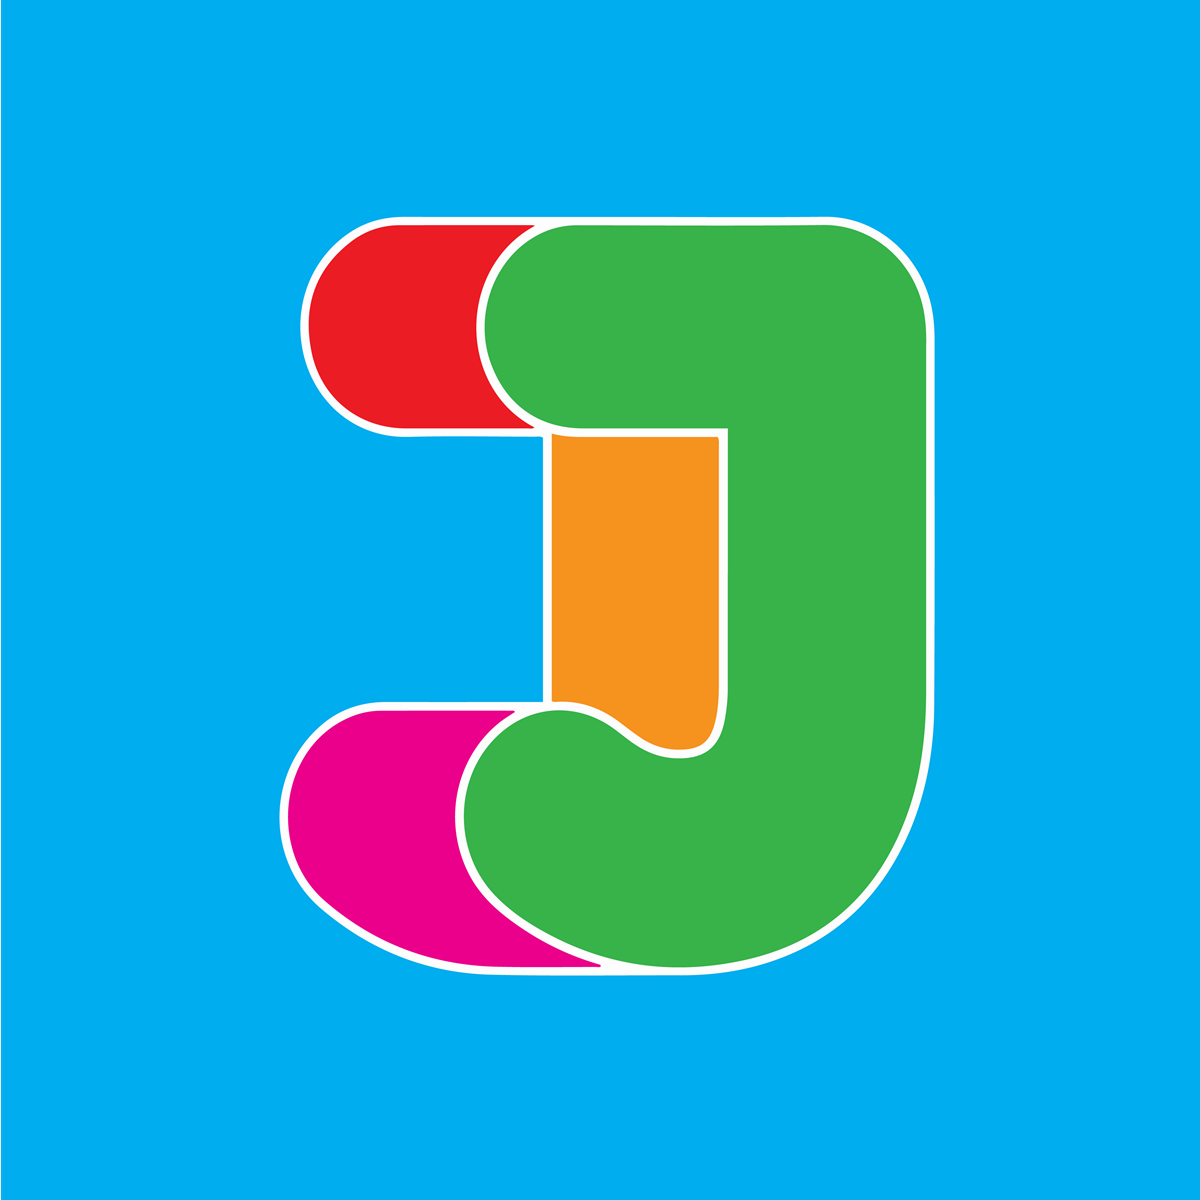 Jelly Marketing + PR's logo.